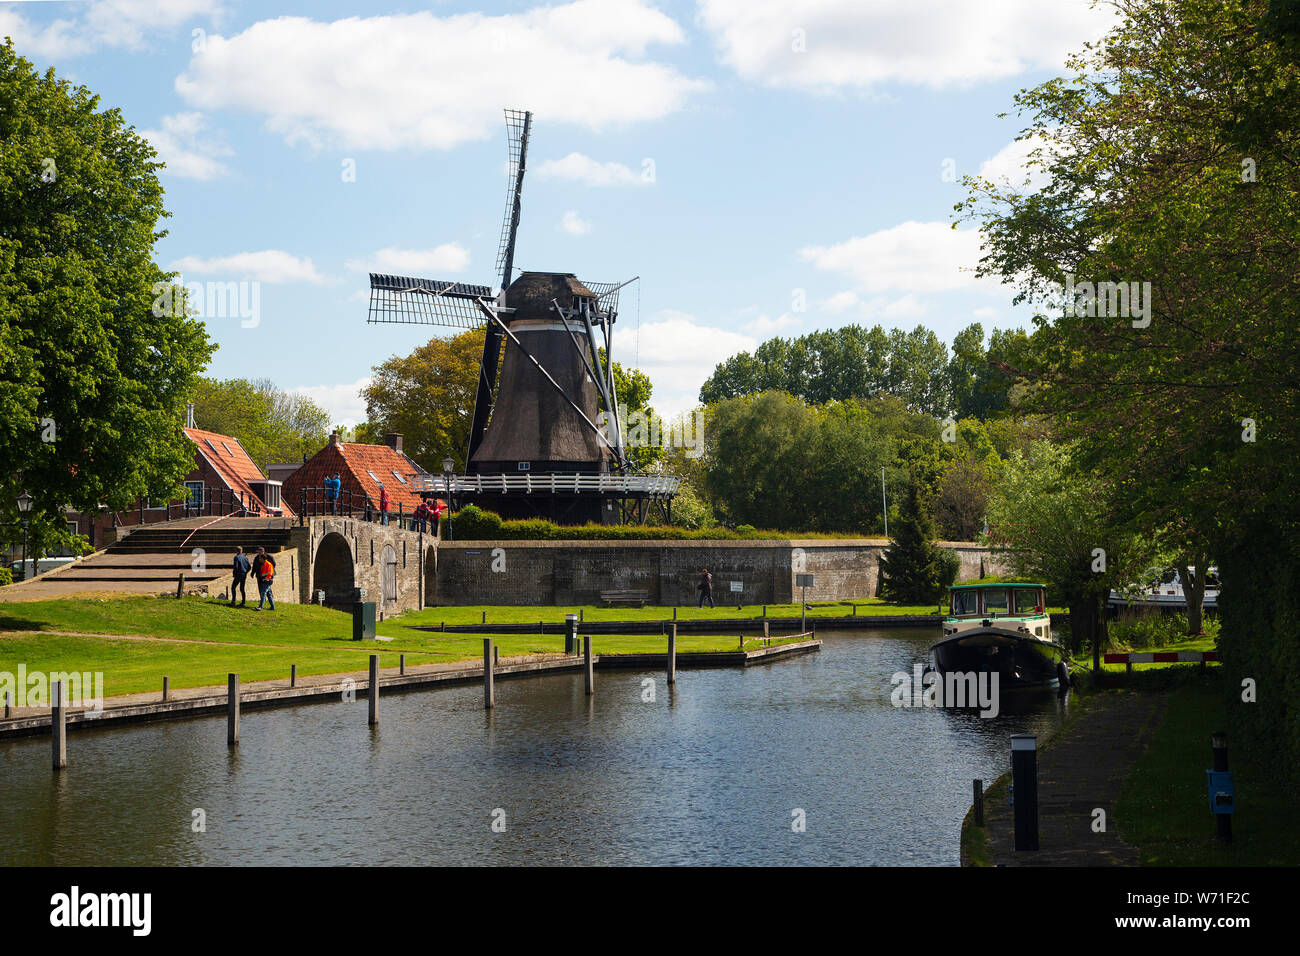 Cornmill legno 'De Kaai' sulle difese della città olandese Sloten, Frisia Foto Stock